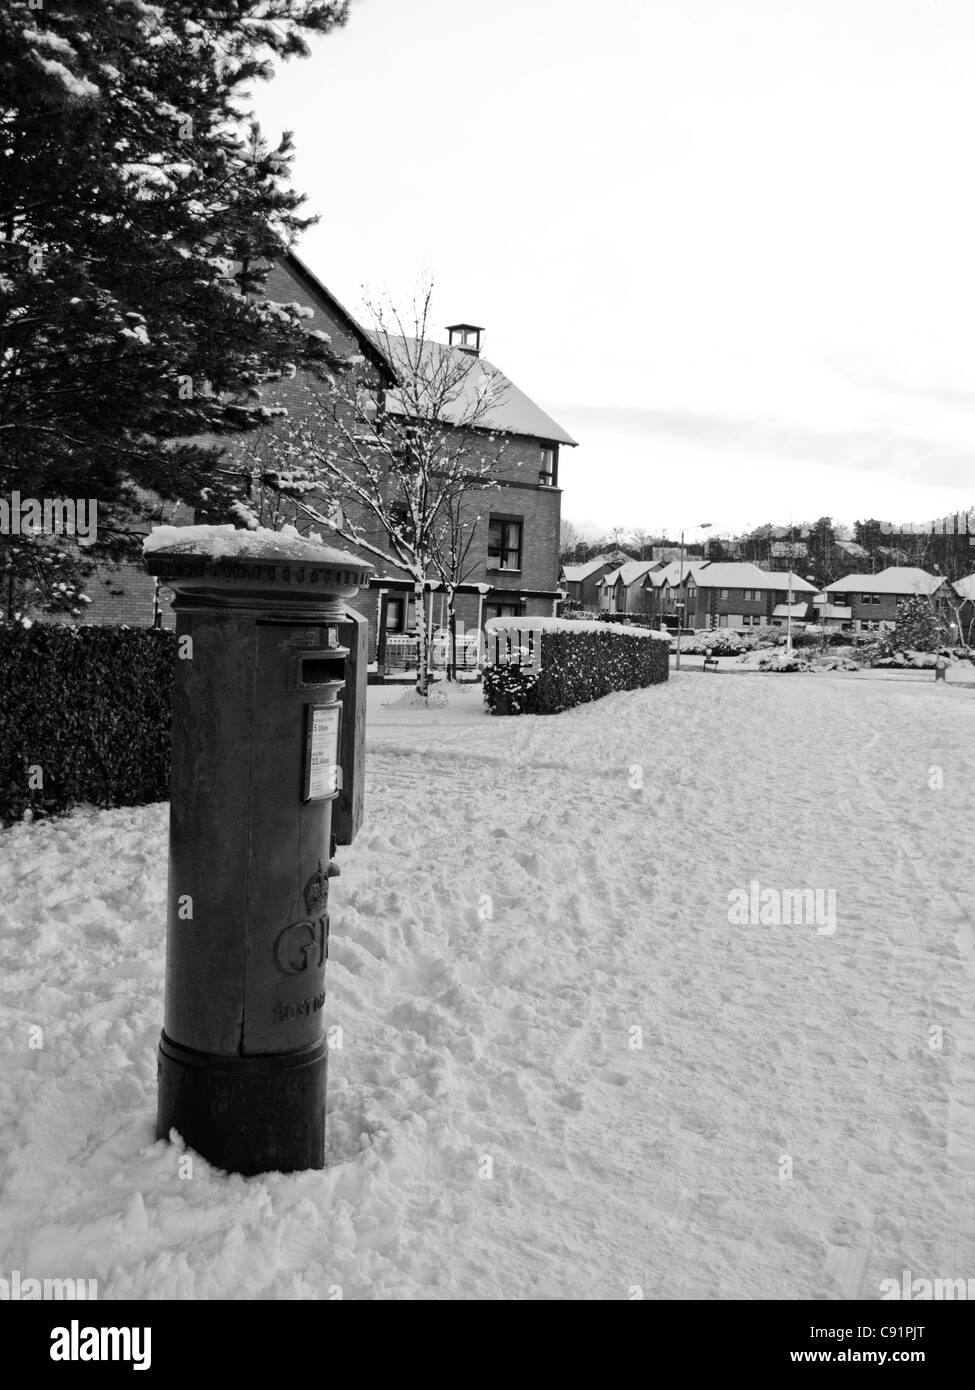 Casella postale in suburbia winter 2010 Foto Stock